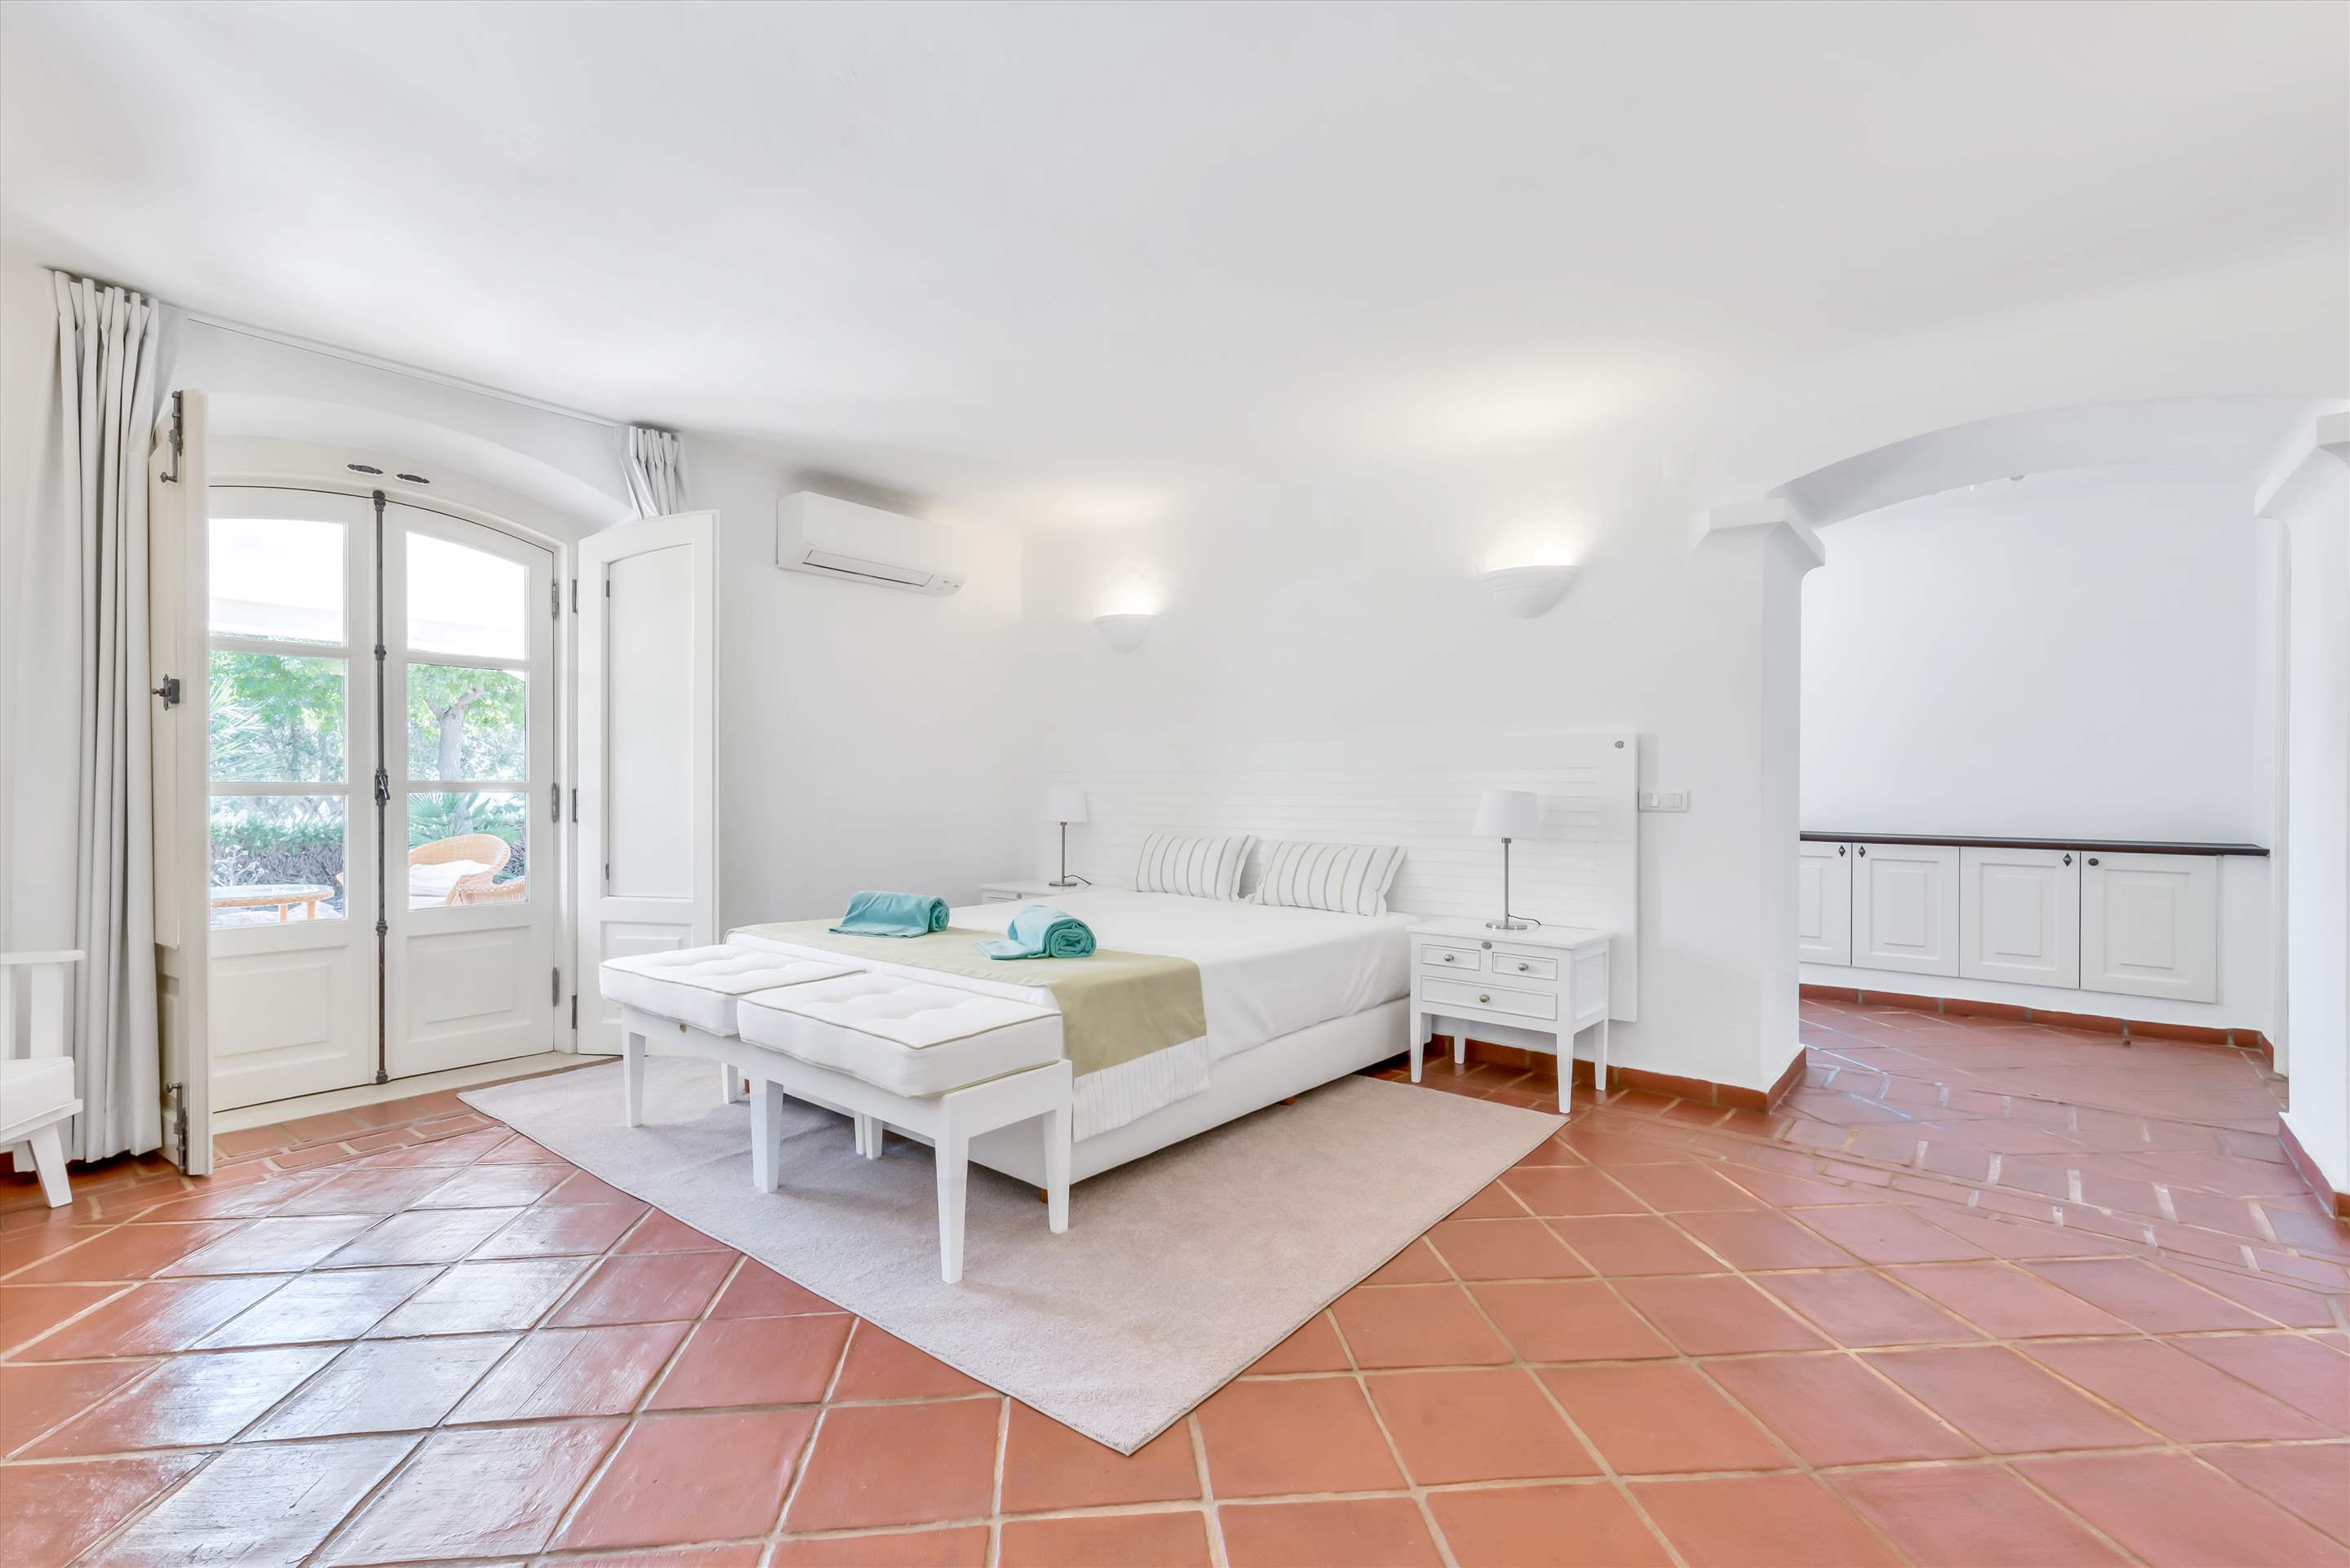 Casa Alemao, Main House, 5 Bedrooms, 5 bedroom villa in Vilamoura Area, Algarve Photo #17